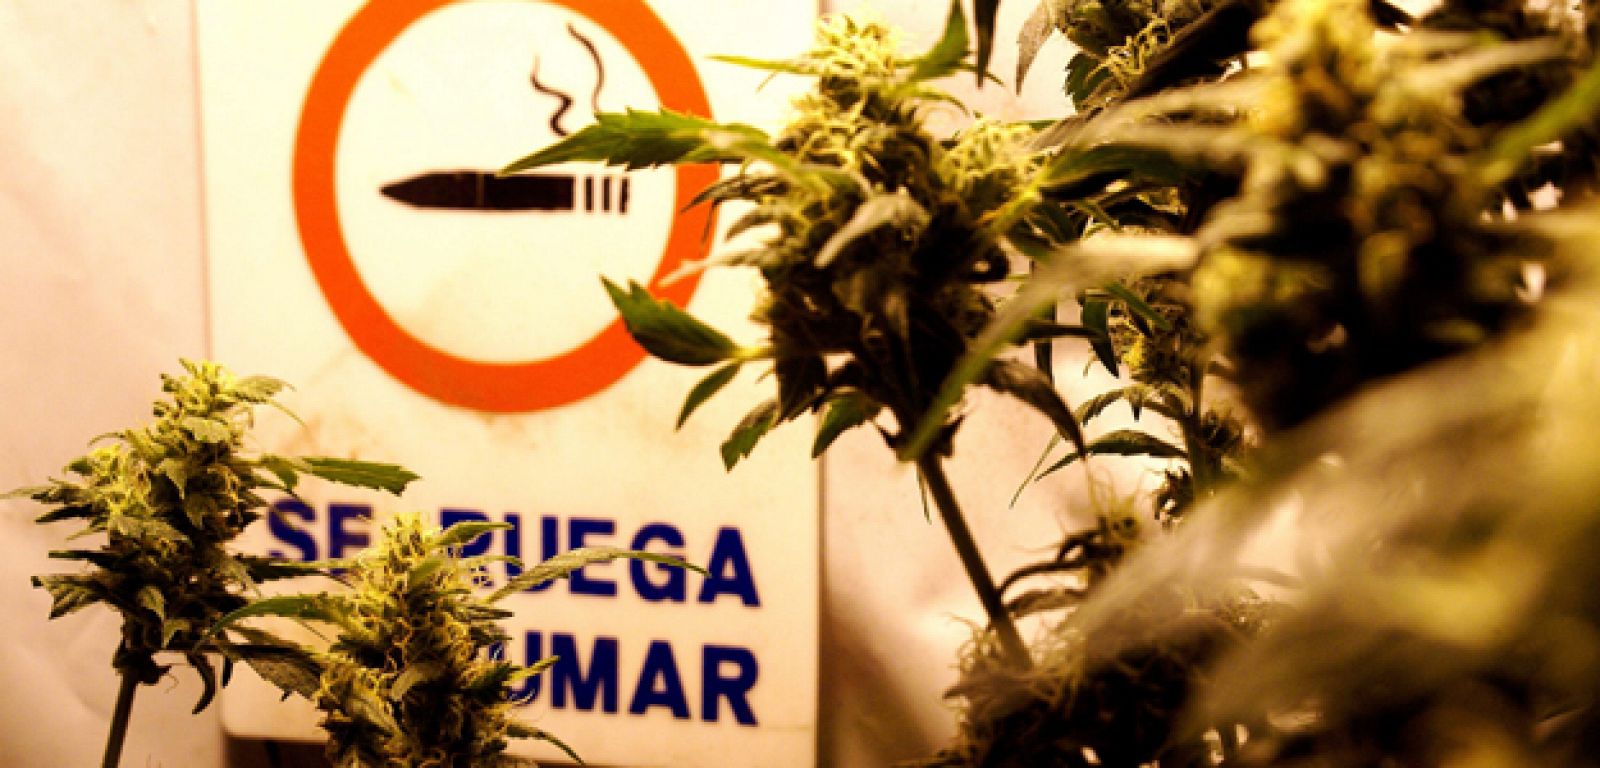 El presidente de Uruguay, José Mujica, presenta el proyecto de ley para legalizar la marihuana este miércoles.